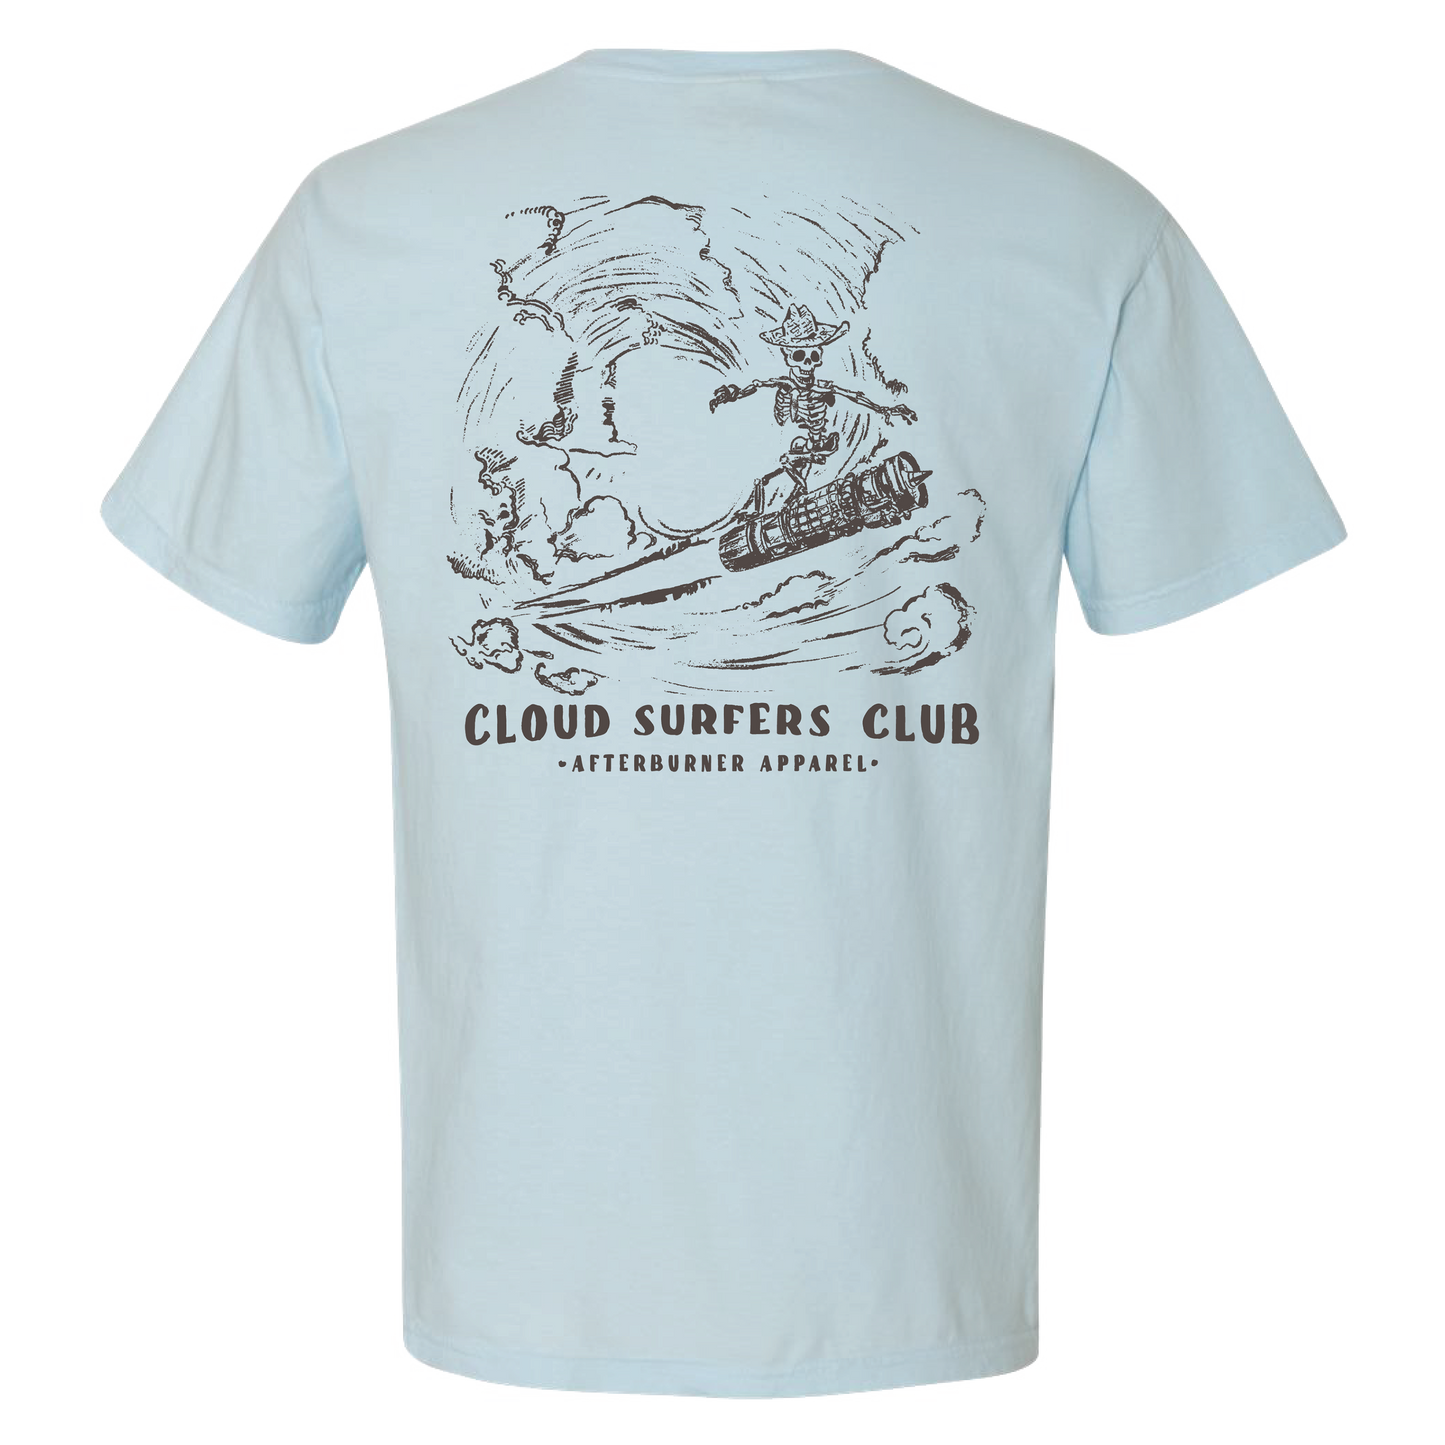 Cloud Surfers Club Tee